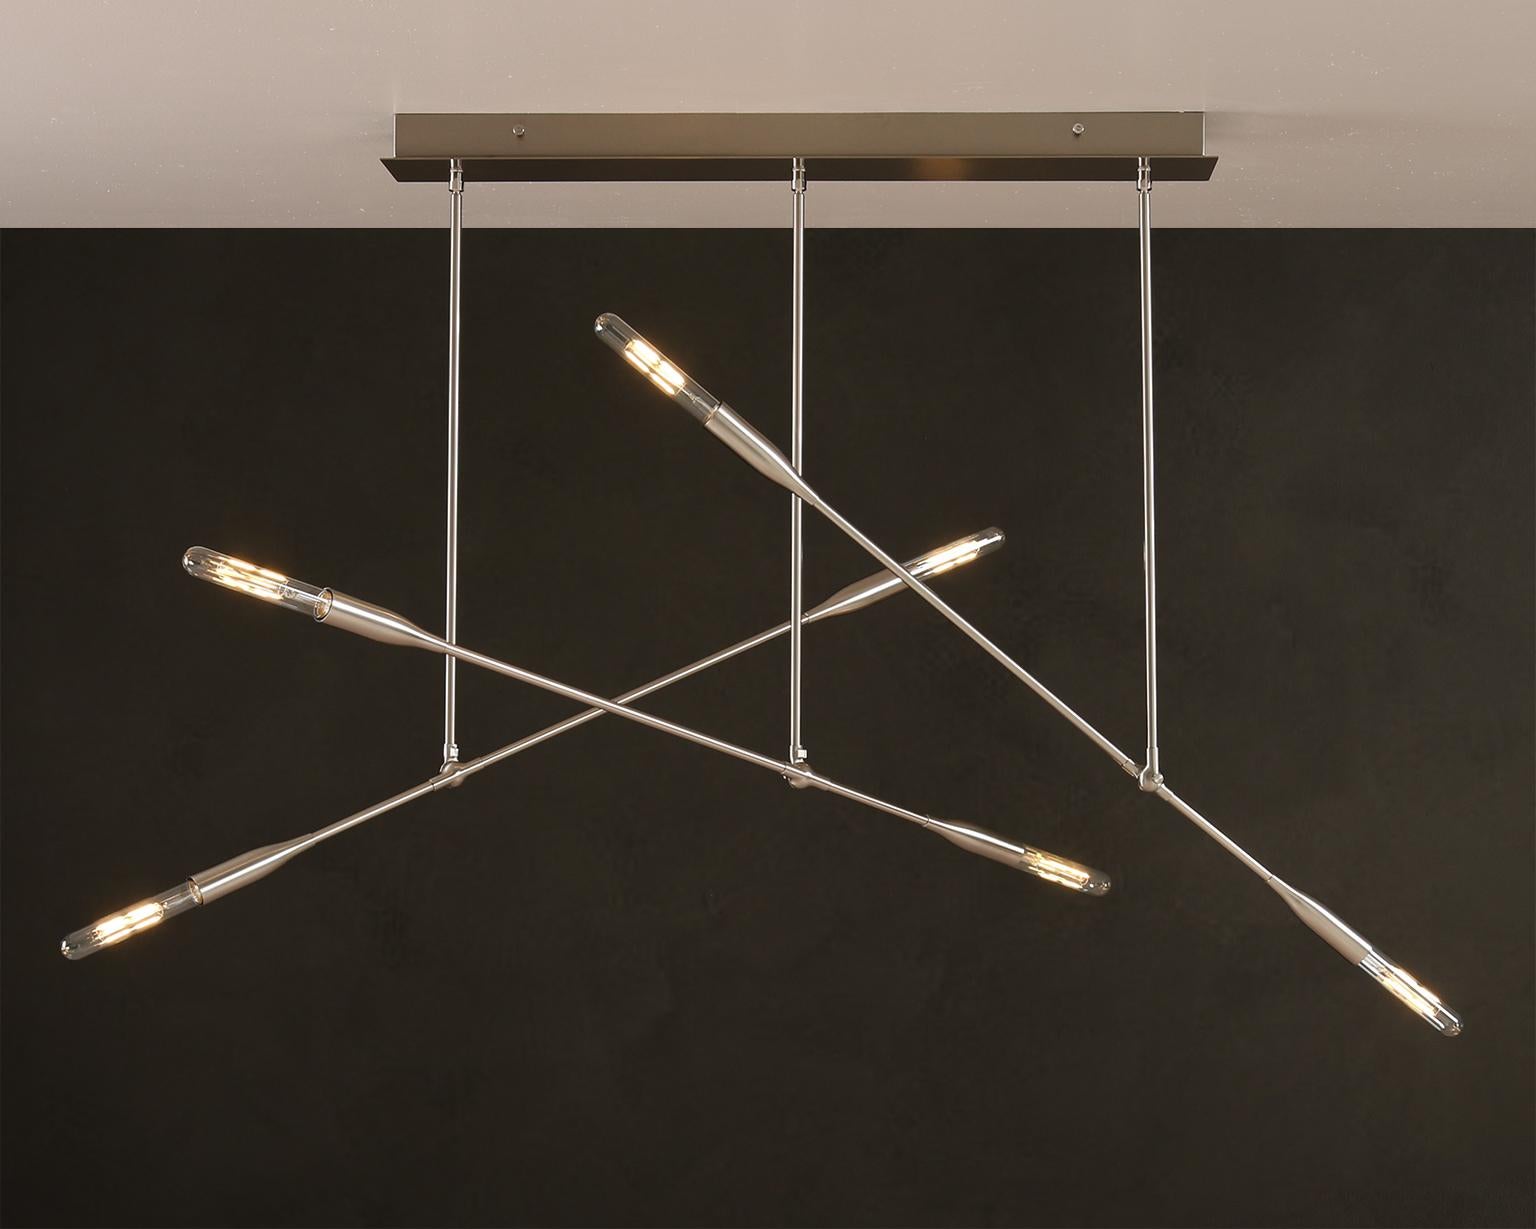 Drei Sorenthia-Leuchten bilden dramatische Winkel auf einem handgefertigten rechteckigen Deckenbaldachin. Dieser von der Mitte des Jahrhunderts inspirierte Kronleuchter zeichnet sich durch freiliegende Glühbirnen, kühne Linien und einen dramatischen